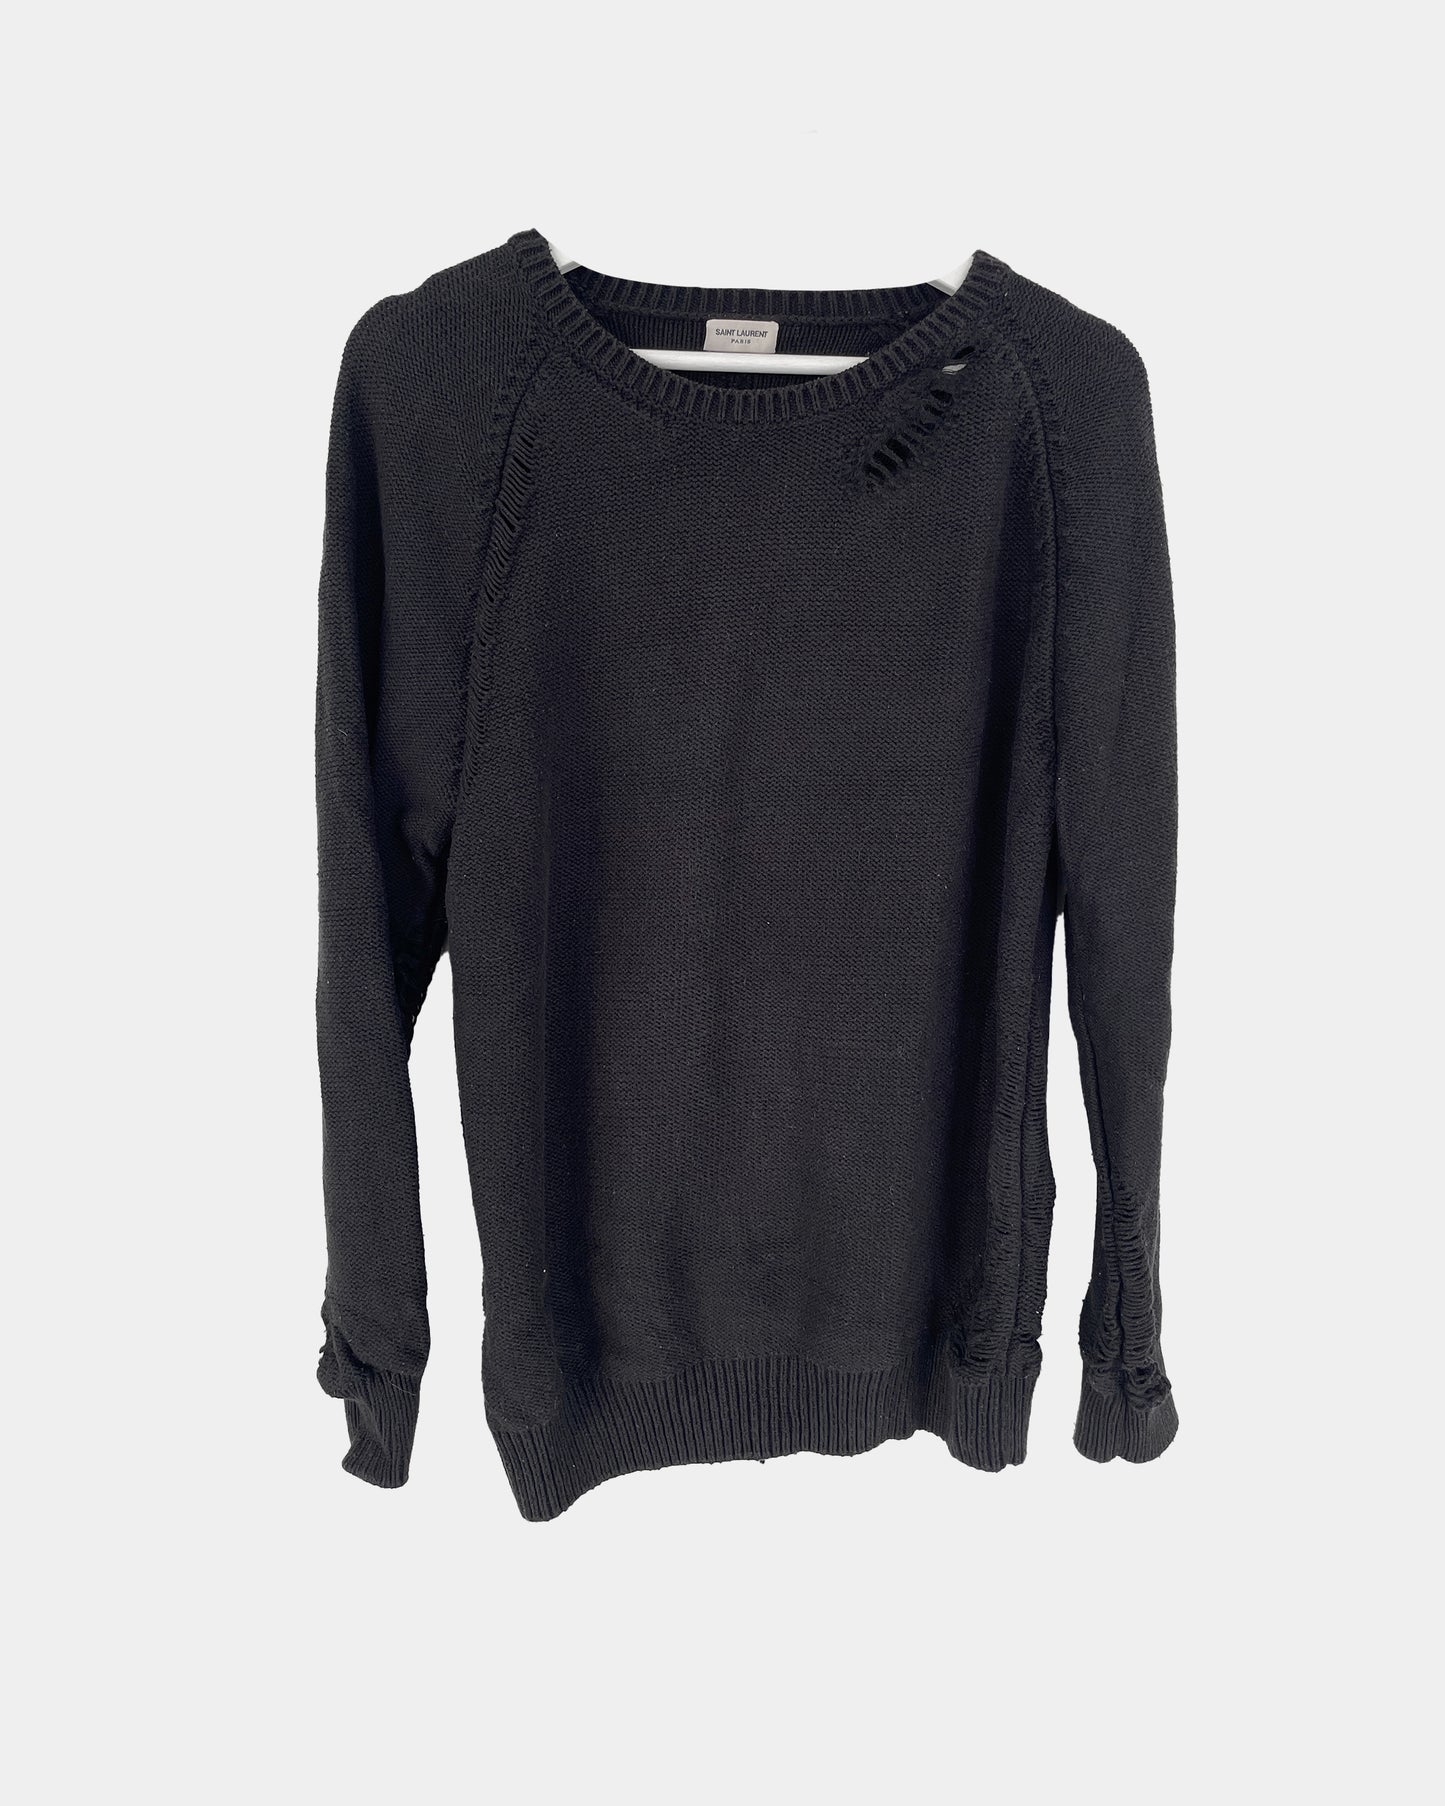 Saint Laurent Knit grunge sweater LARGE